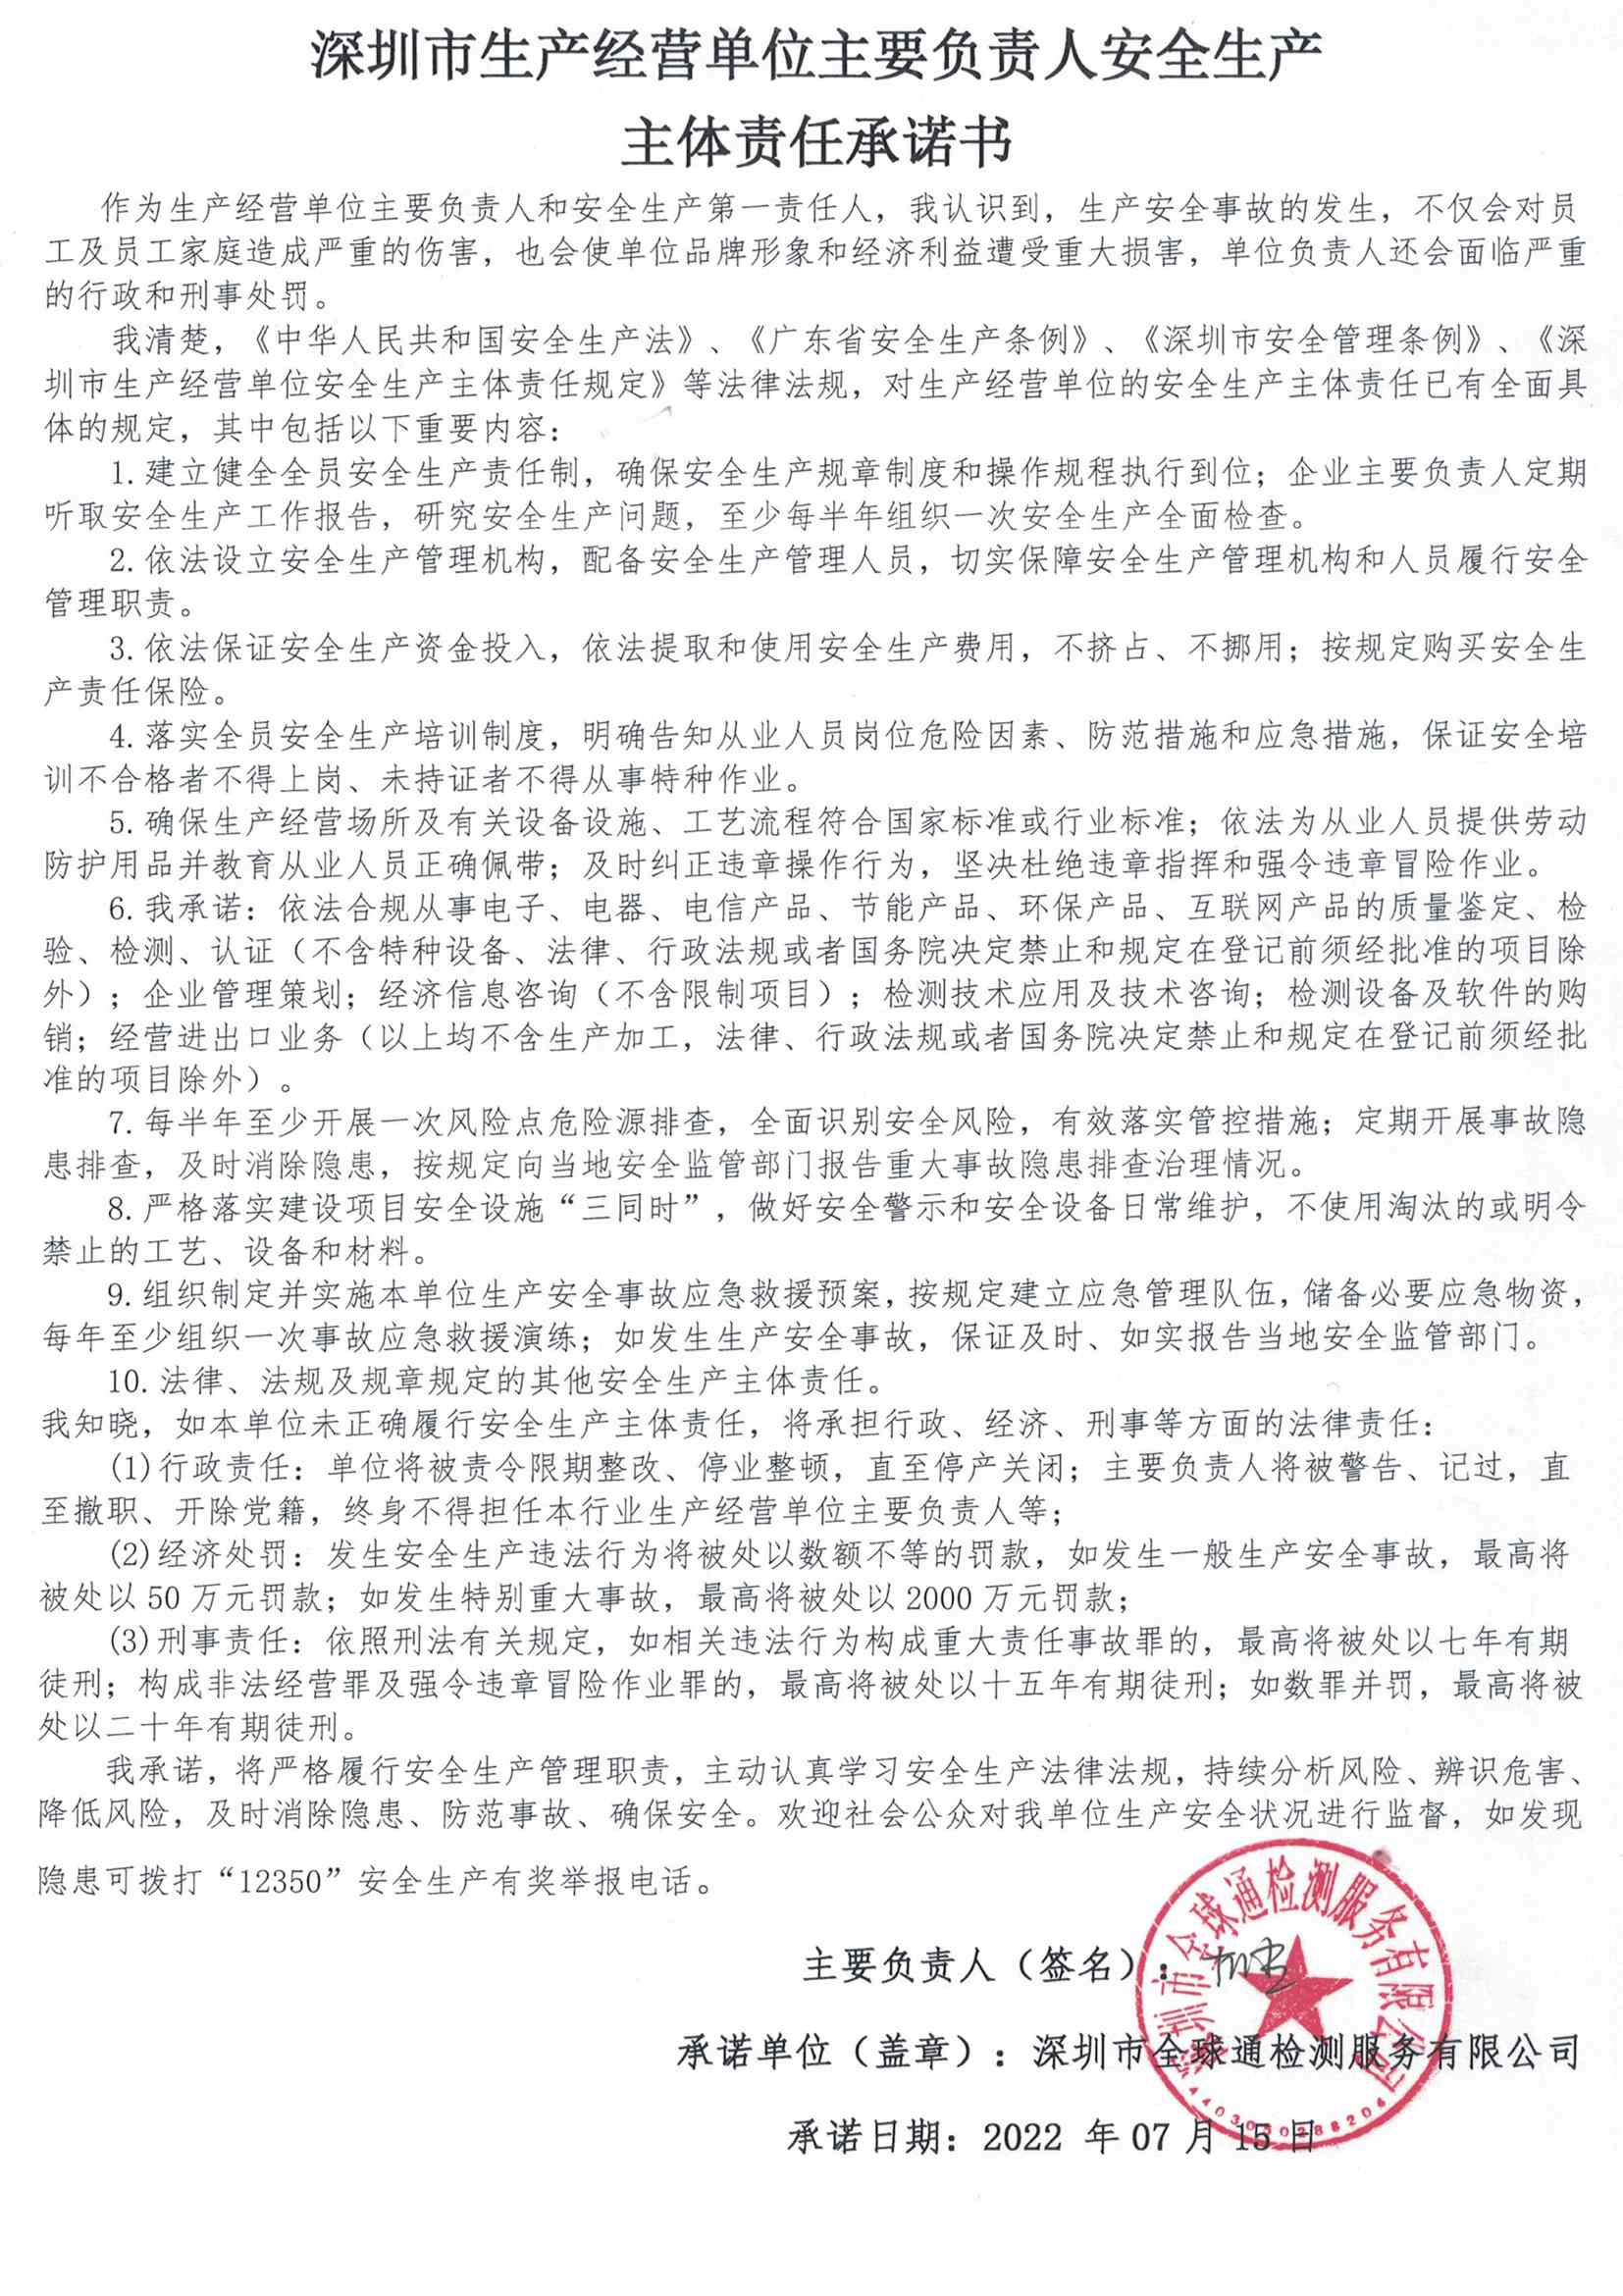 深圳市安全生产主体责任承认书（全球通）.jpg